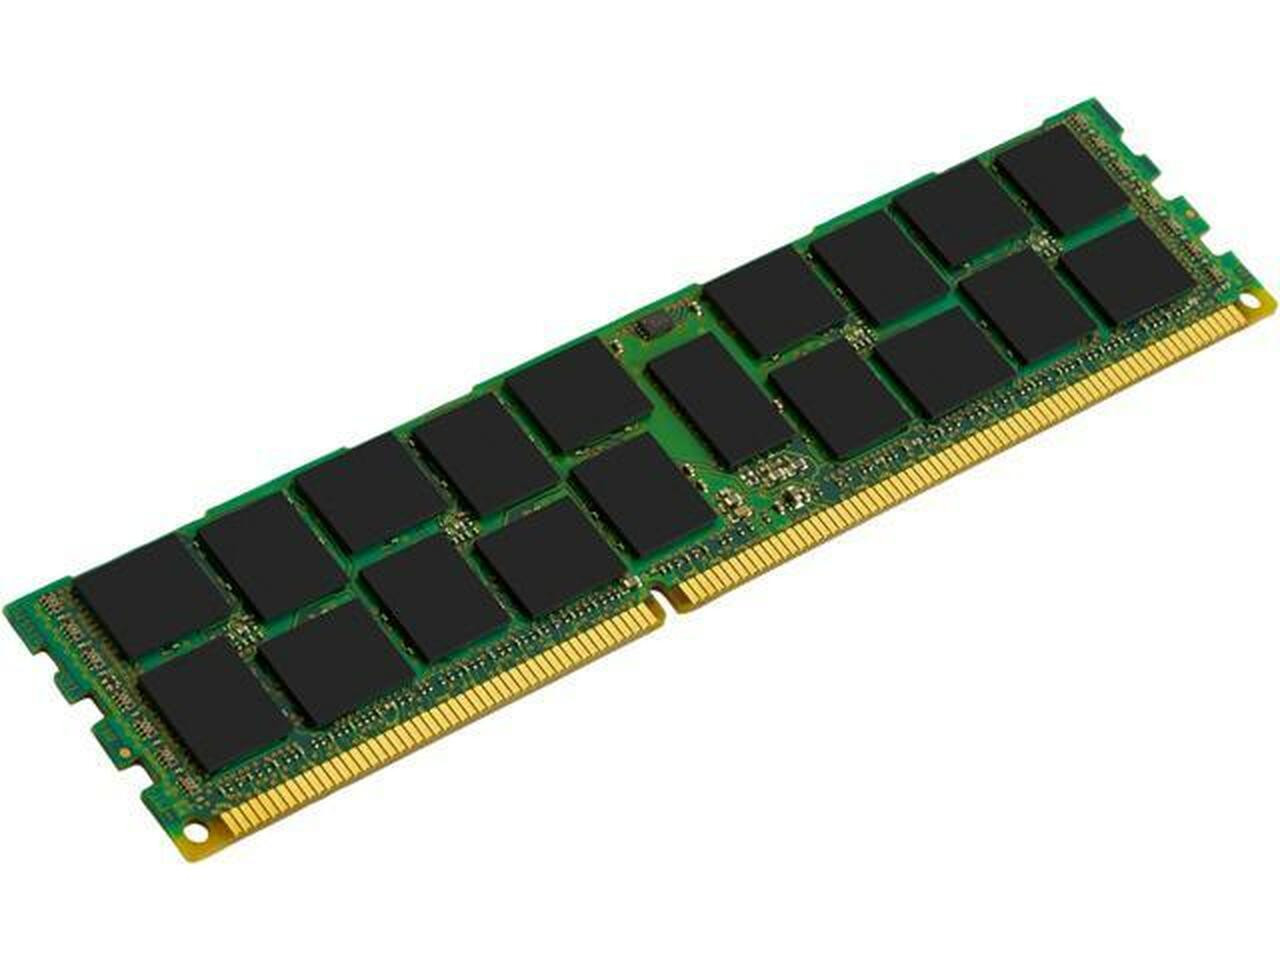 Netpatibles 8GB DDR3 SDRAM Memory Module - MEMDR380LHL09ER16NPM